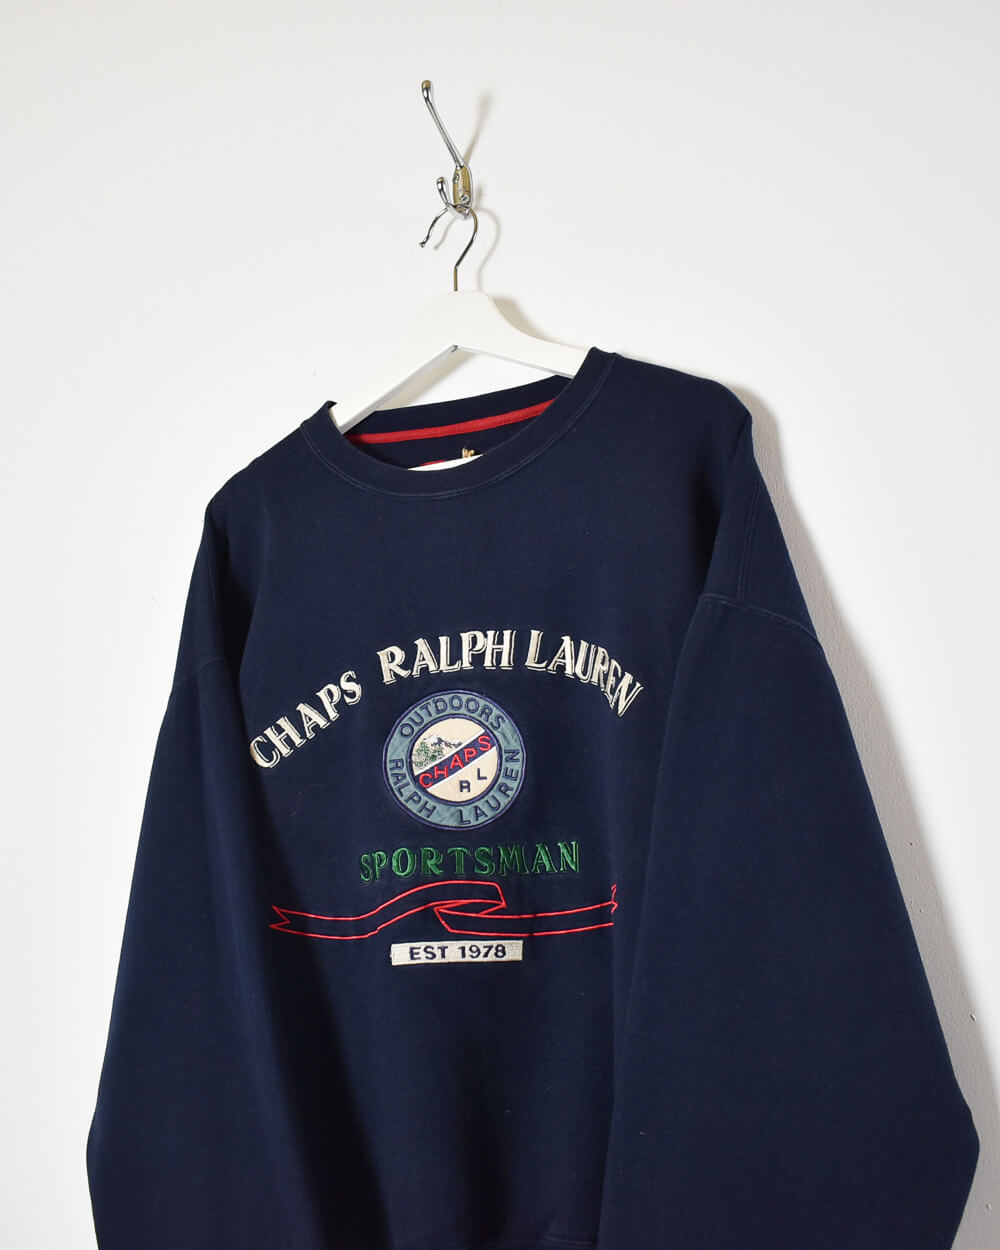 Vintage Chaps Ralph Lauren Oversized Polo Shirt 90s Striped Cotton